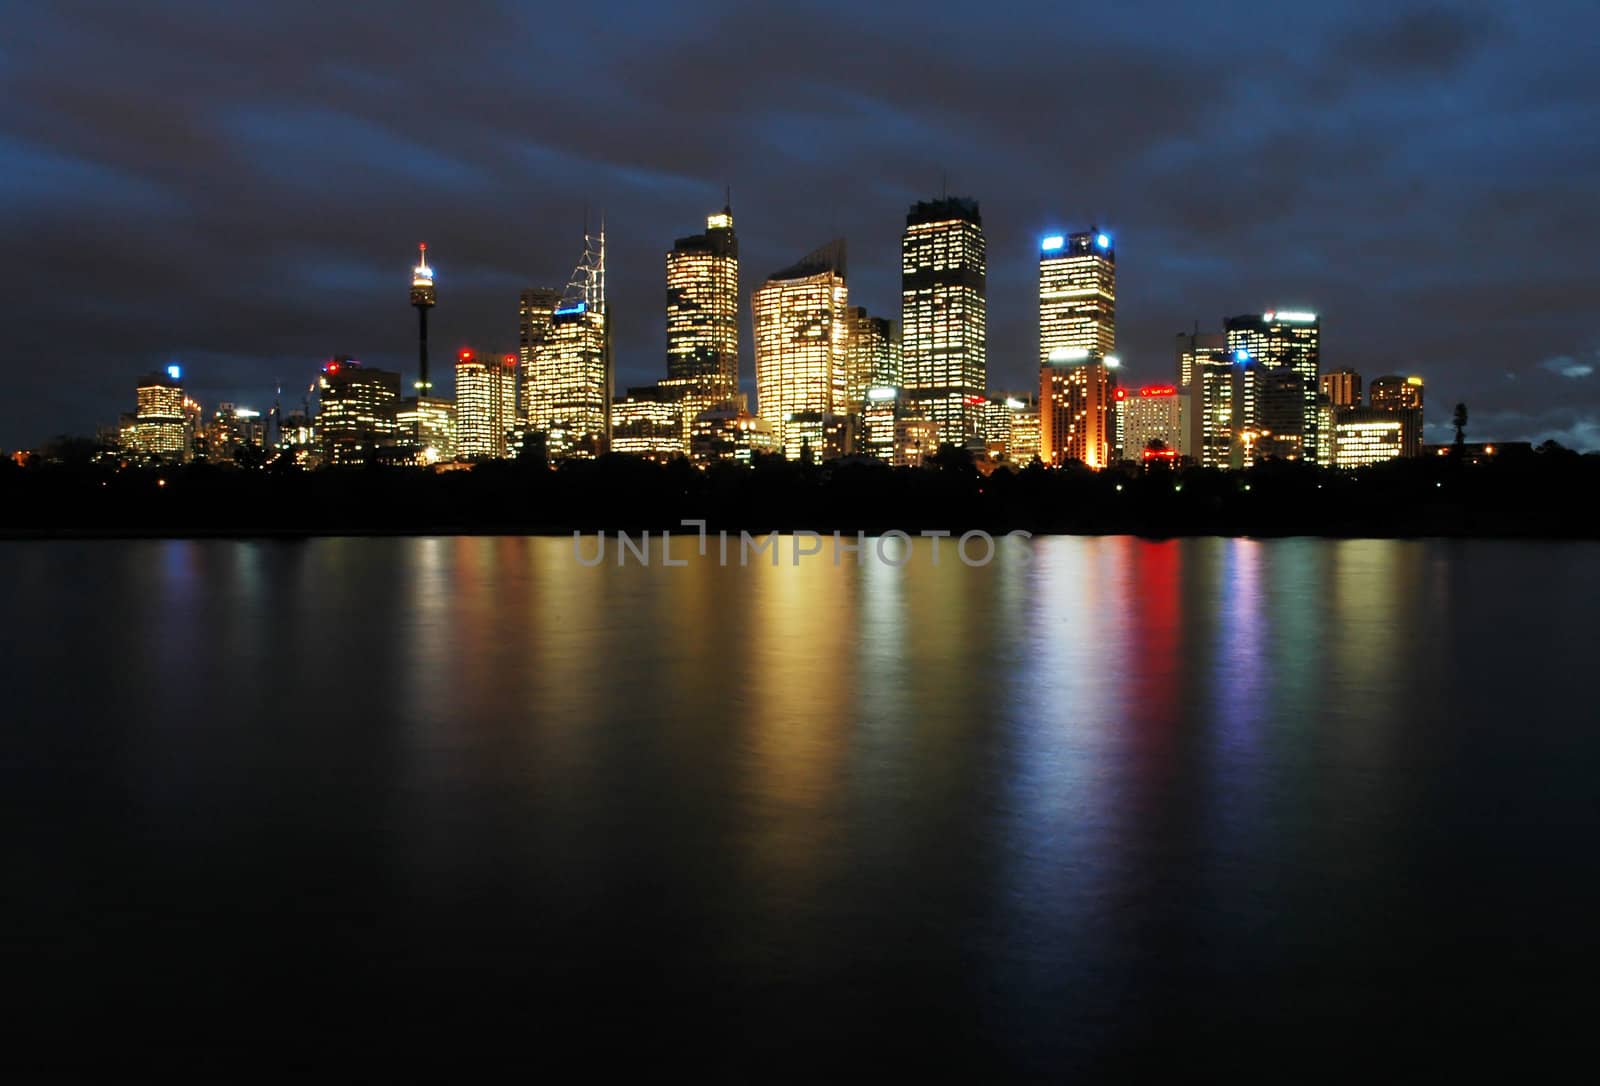 Sydney at night by rorem